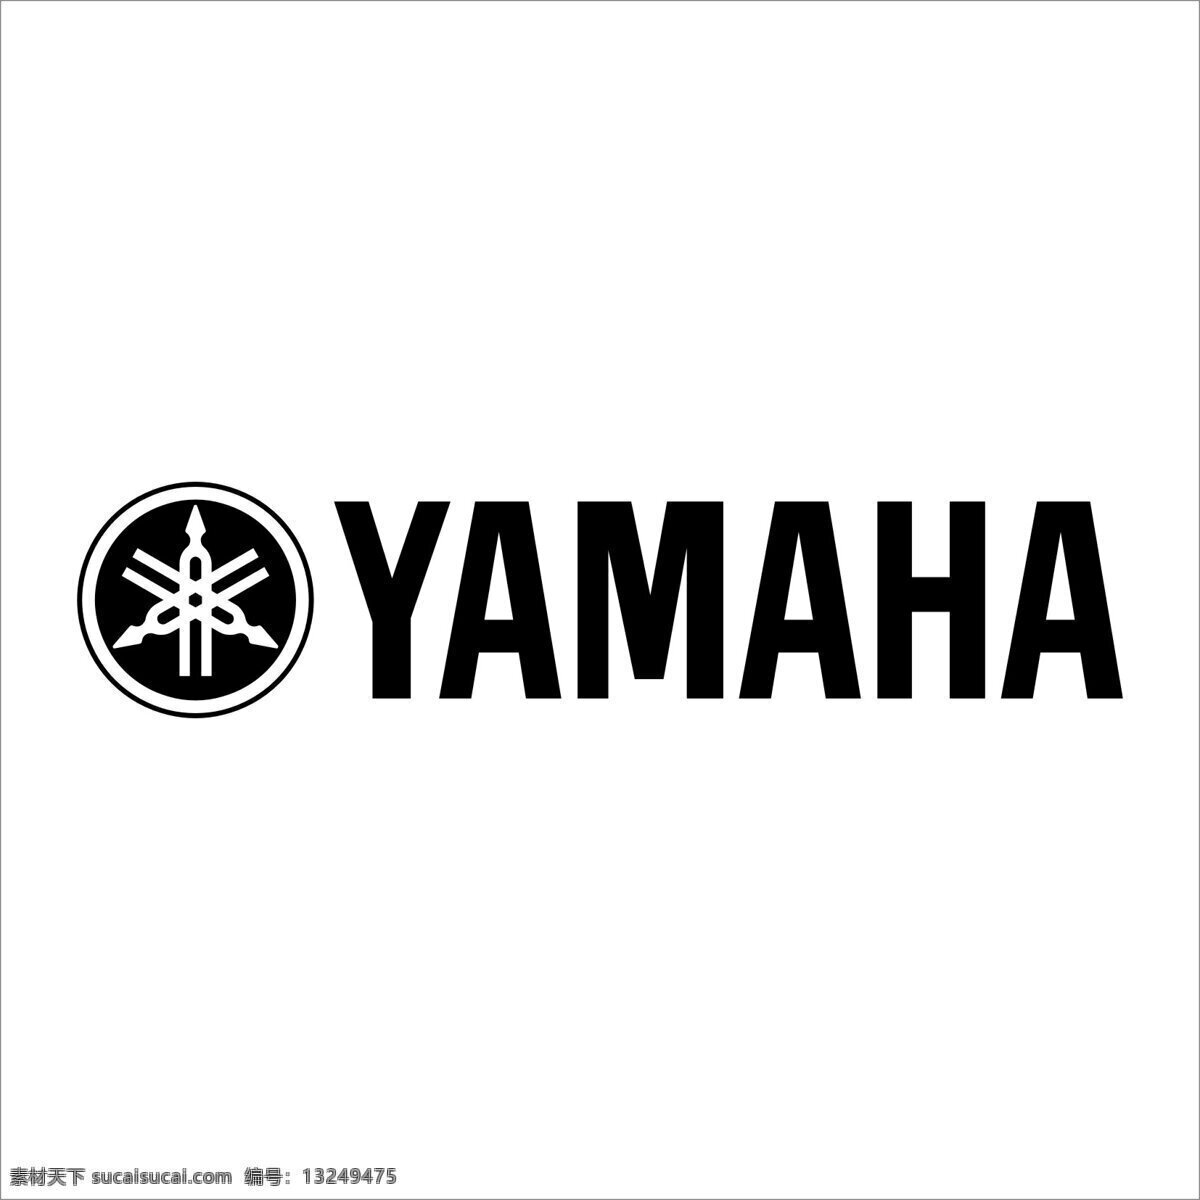 矢量 雅马哈 yamaha 摩托车 标志 logo 摩托车标志 汽车logo 矢量雅马哈 著名 品牌汽车 性感 超酷 矢量图 其他矢量图